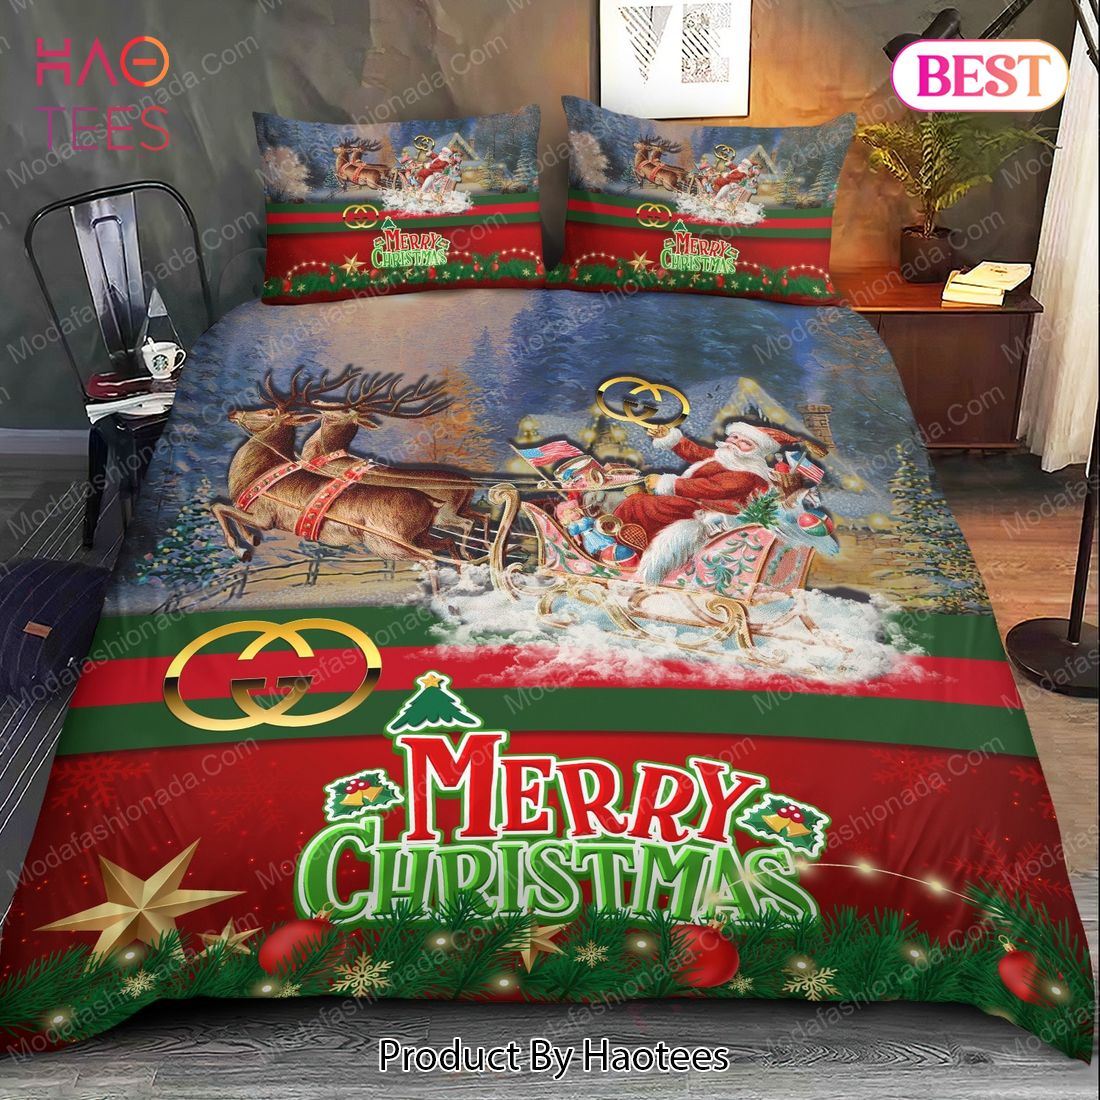 Buy Santa Claus's Reindeer Merry Christmas Gucci Bedding Sets Bed Sets, Bedroom Sets, Comforter Sets, Duvet Cover, Bedspread